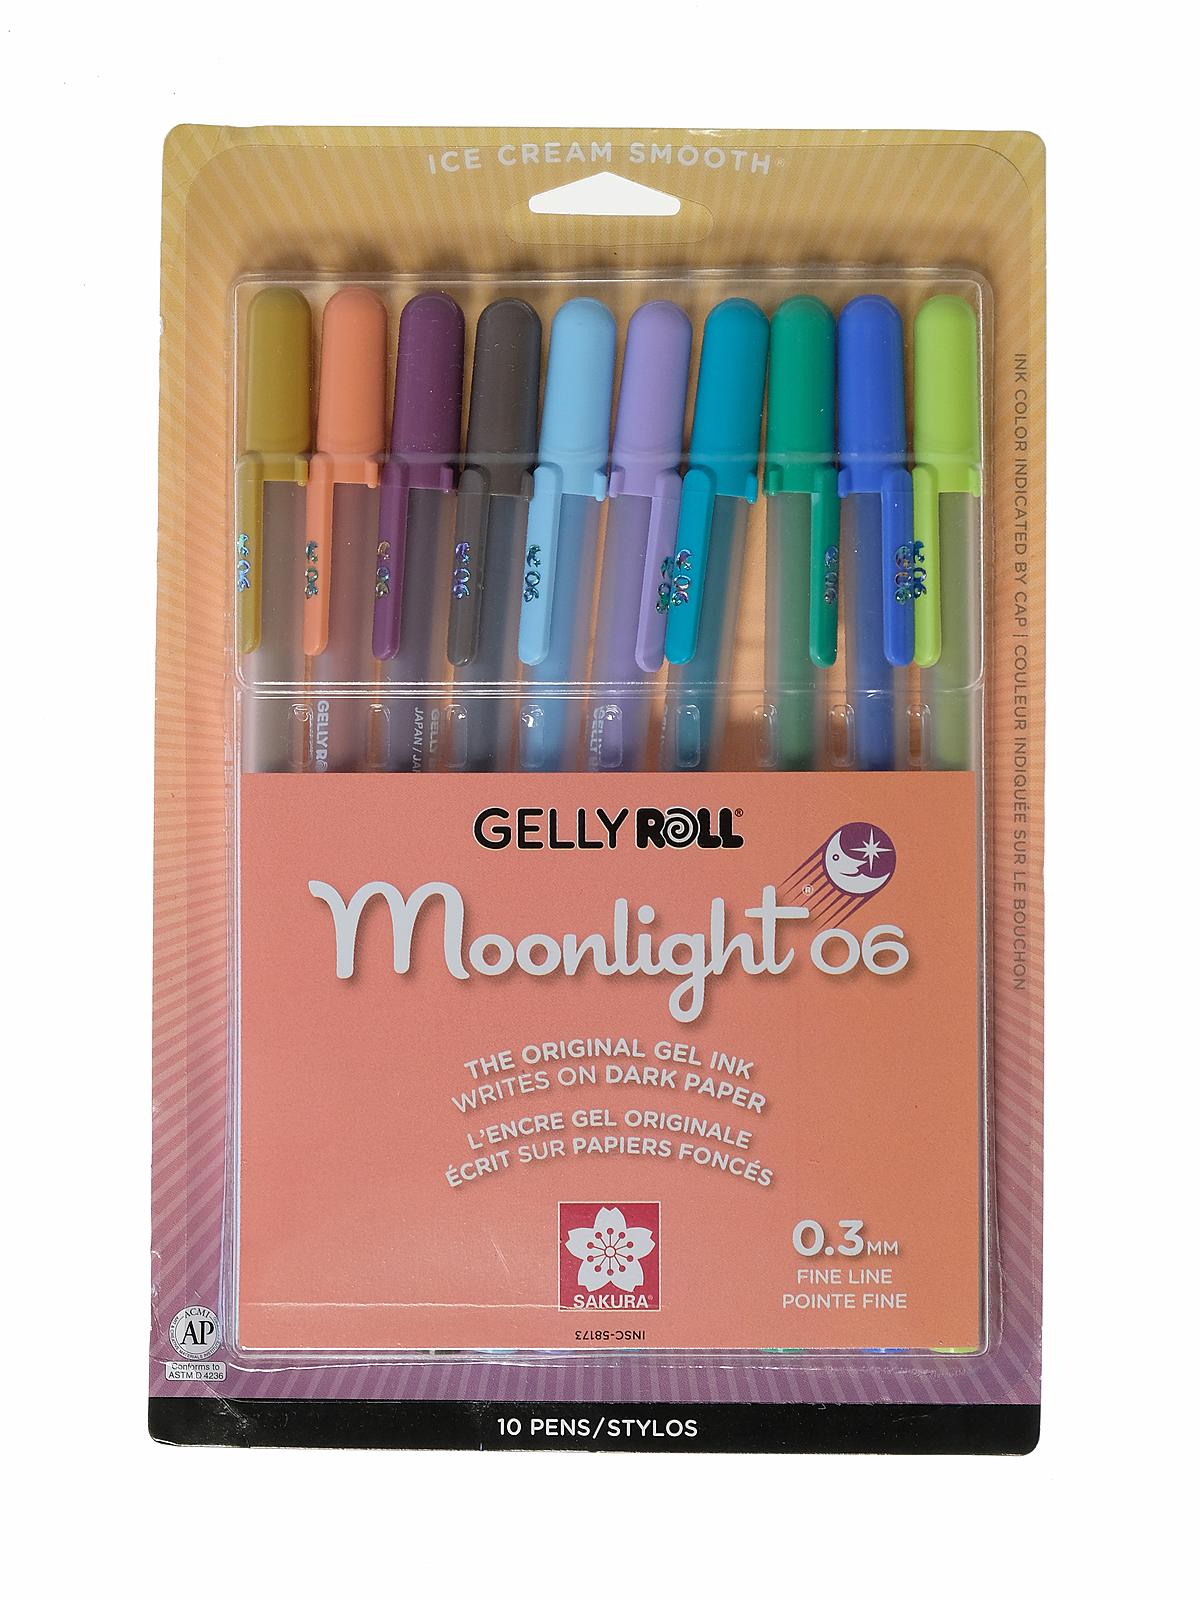 Gelly Roll Moonlight Pastel Set